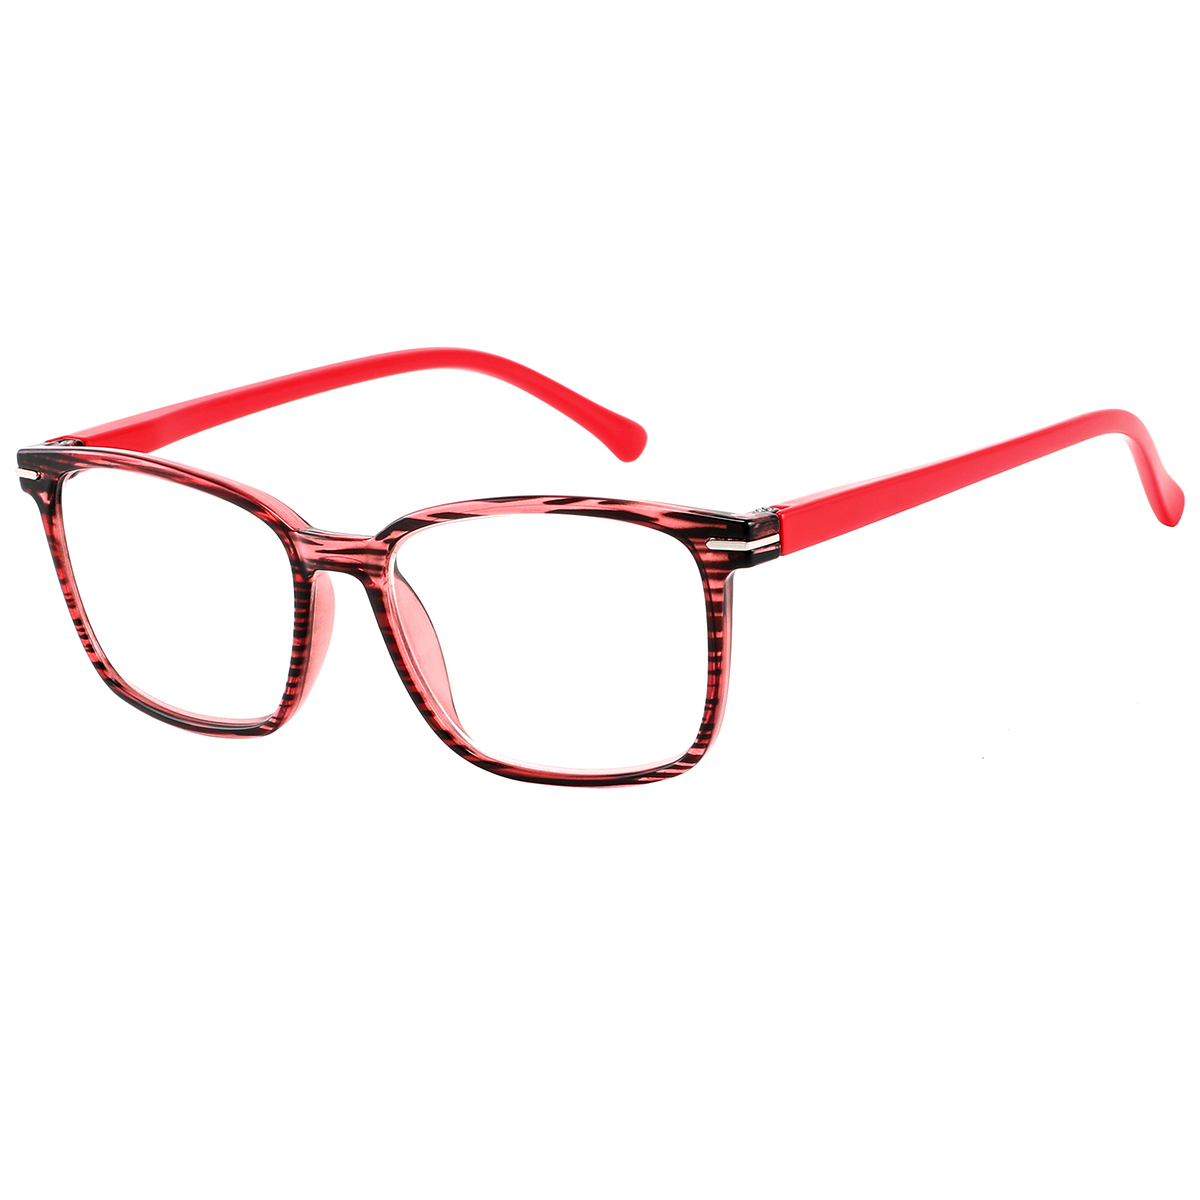 Getae - Square Red Reading Glasses for Men & Women